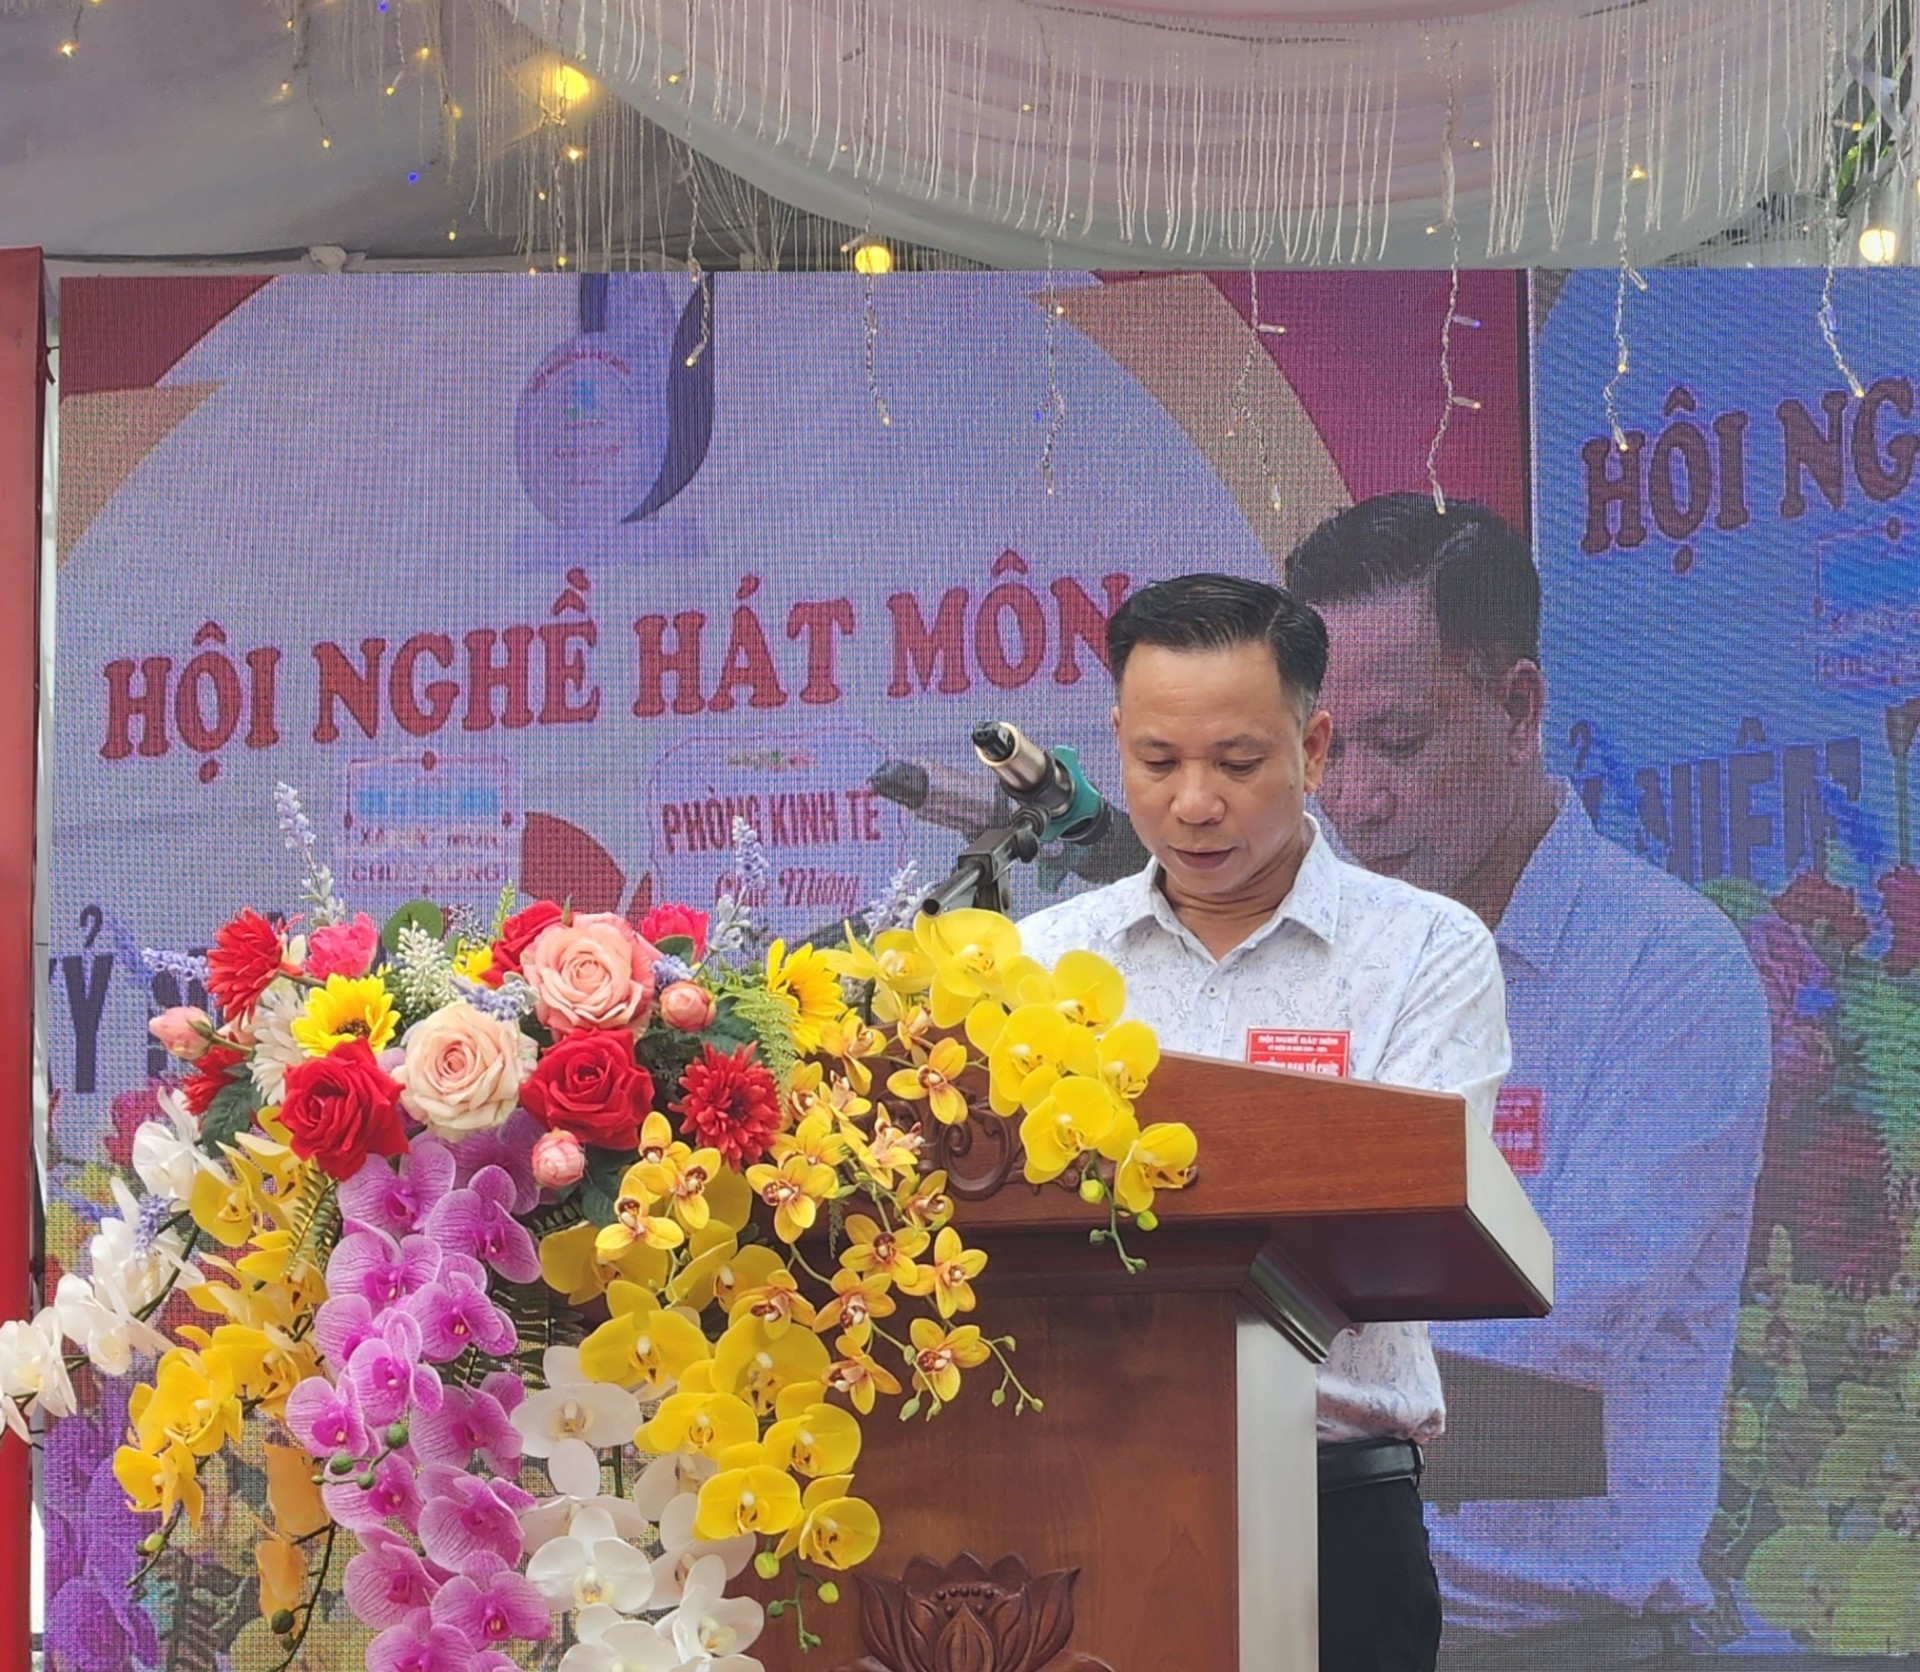 Hà Nội: “Hội Nghề Hát Môn” hân hoan tổ chức kỷ niệm 20 năm ngày thành lập